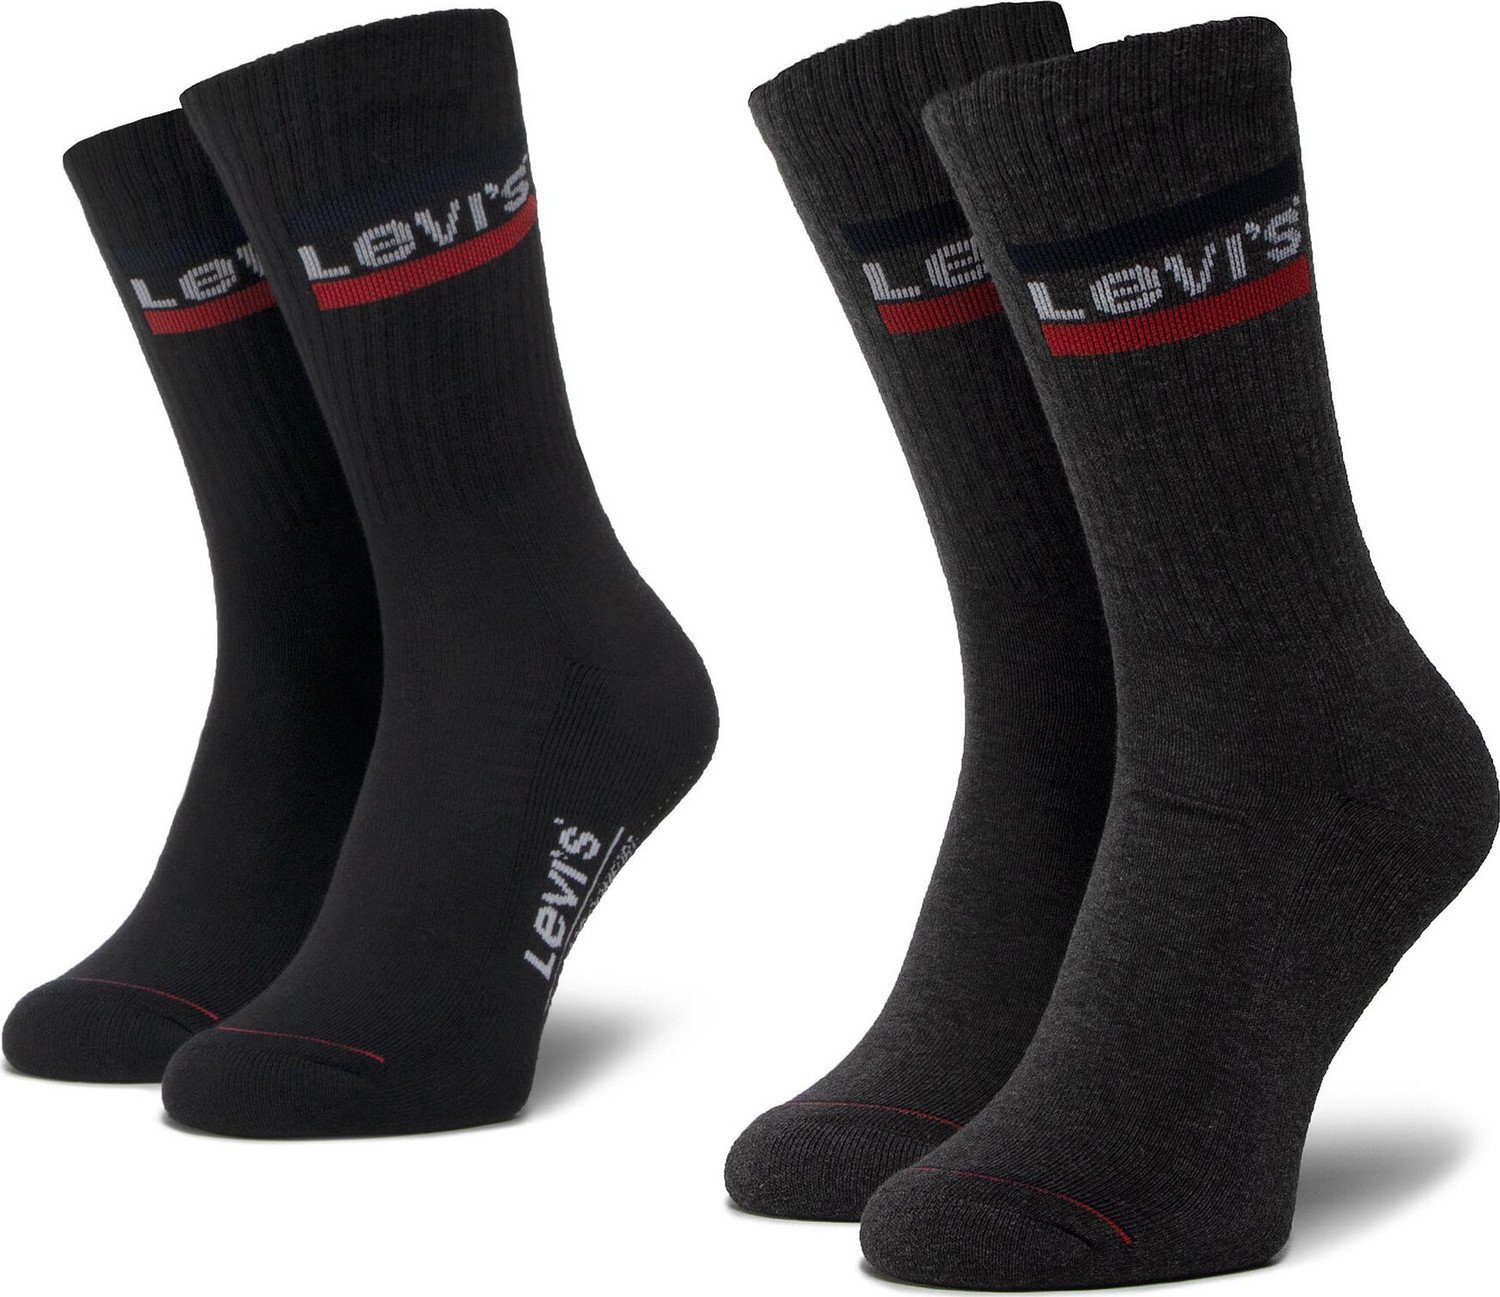 Sada 2 párů vysokých ponožek unisex Levi's® 37157-0153 Mid Grey/Black